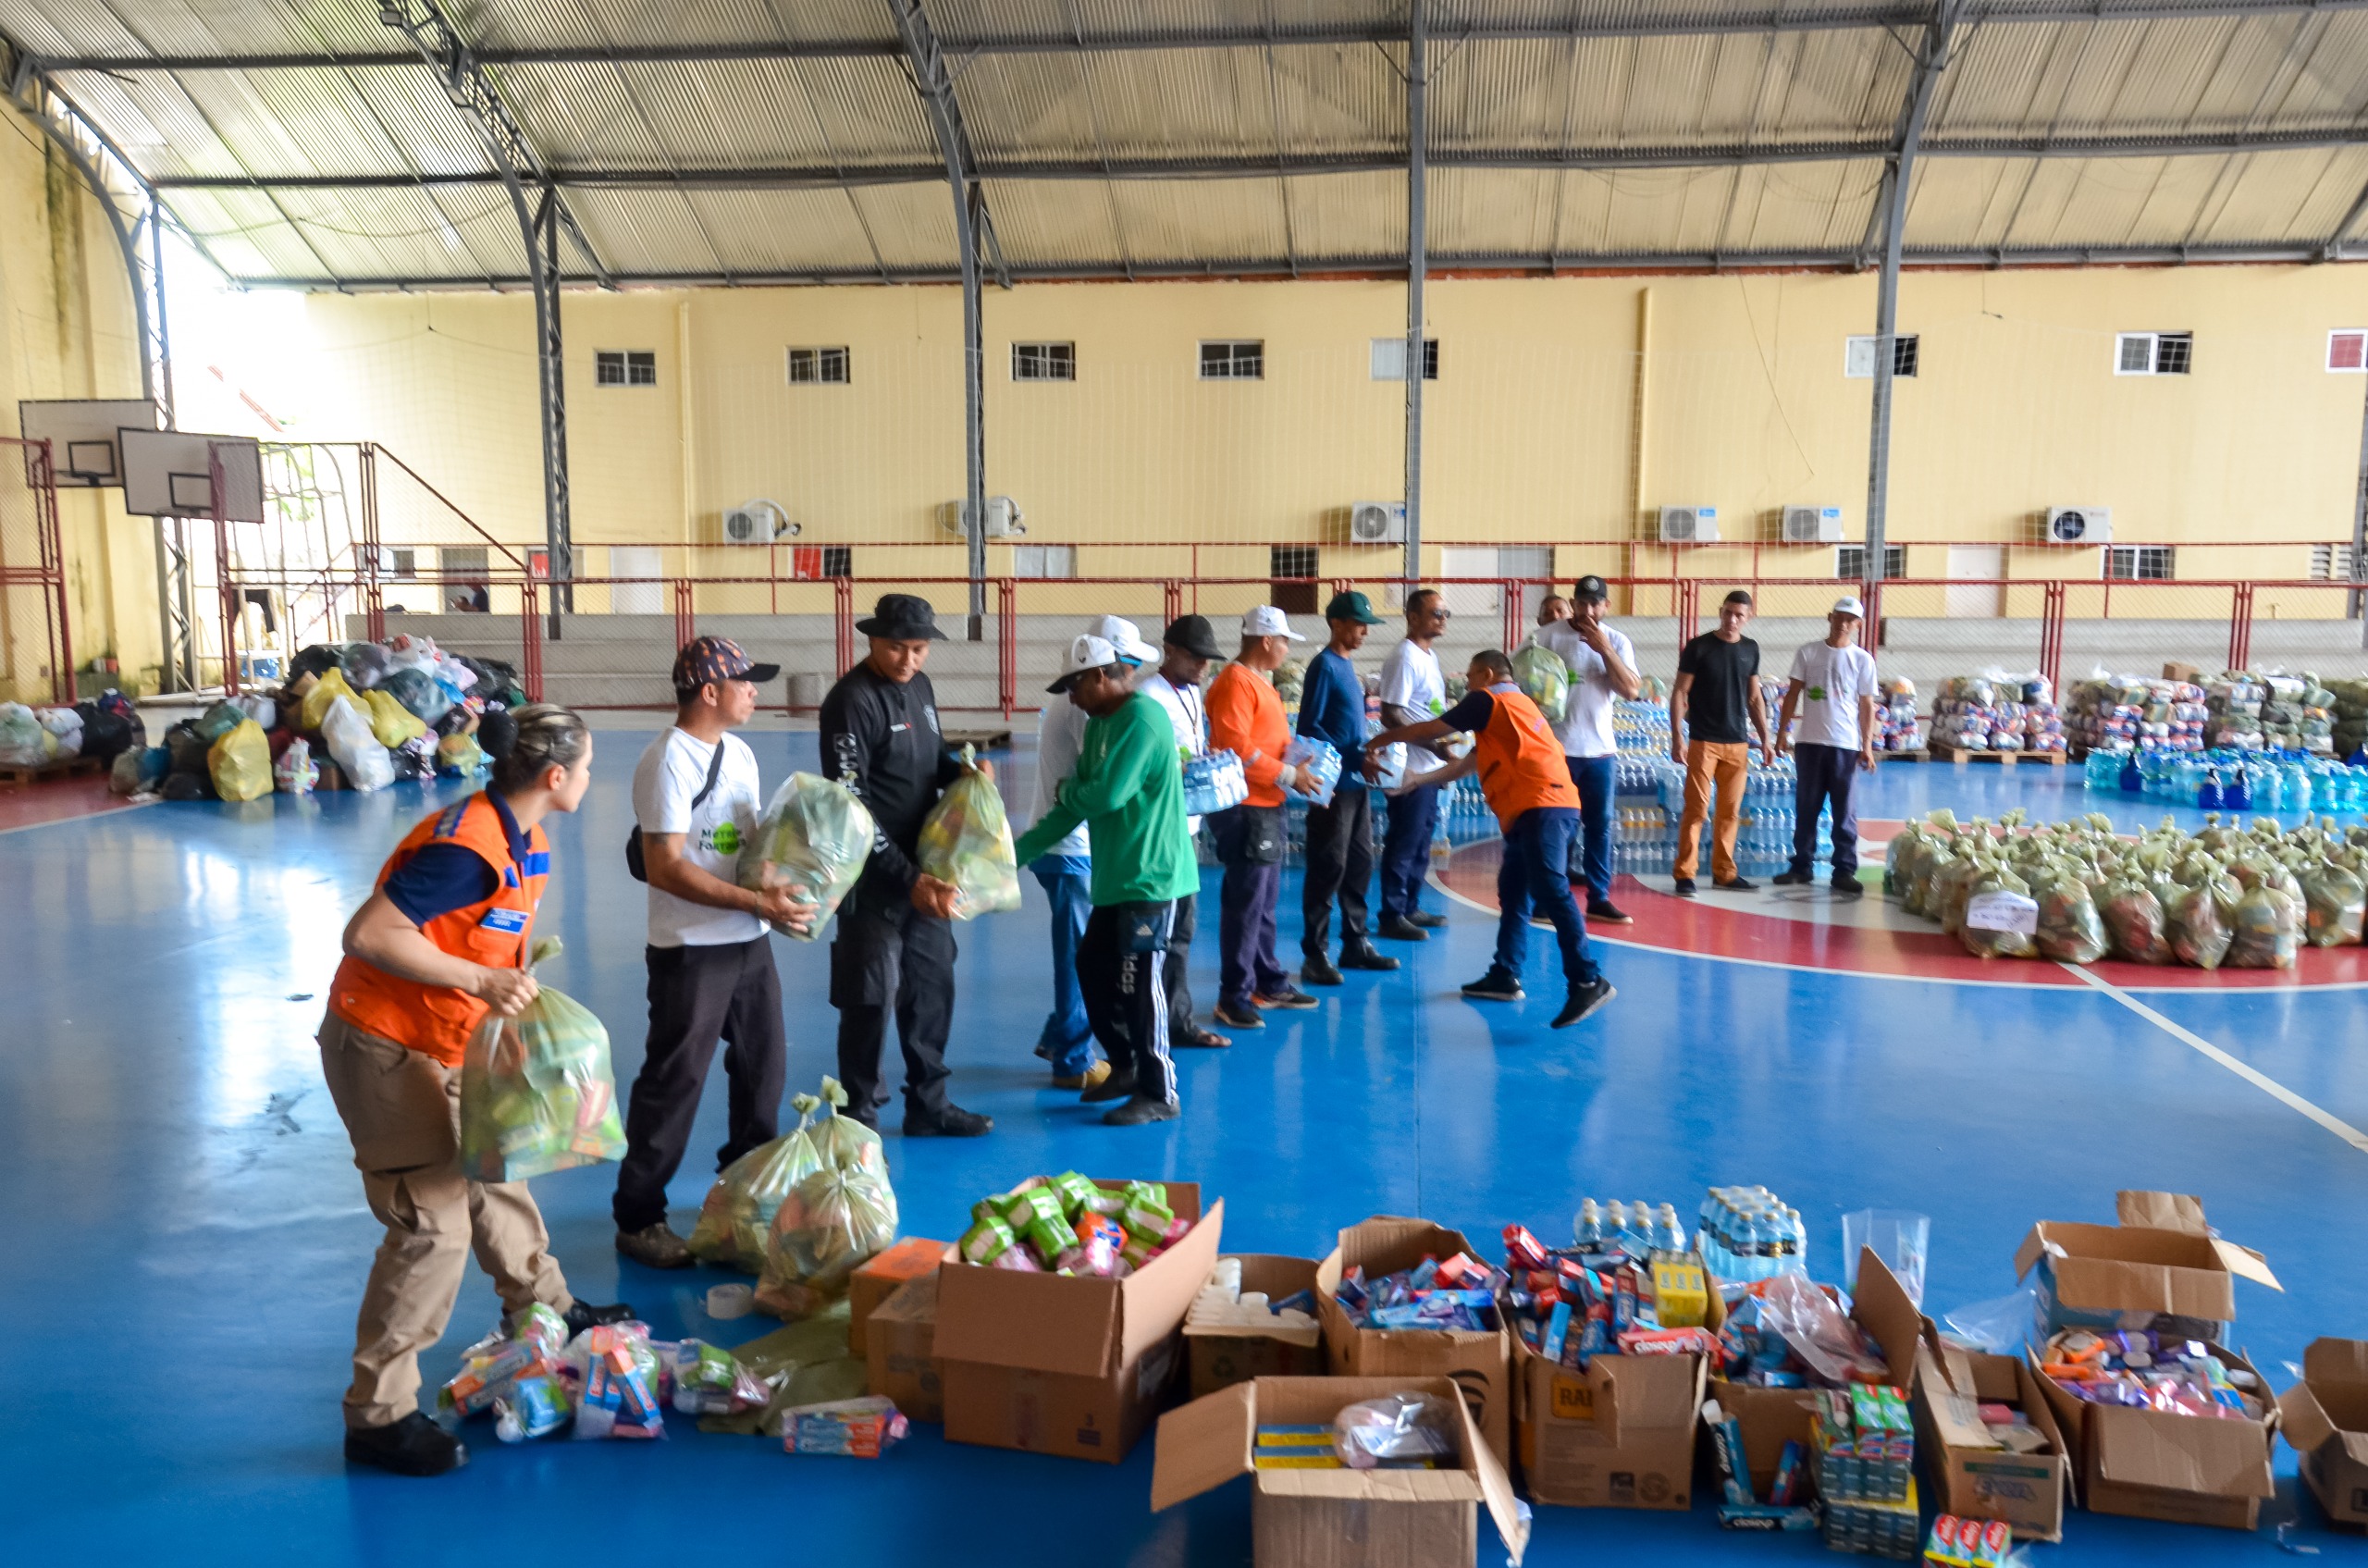 Egressos do sistema penitenciário reforçam o trabalho de ajuda humanitária ao Rio Grande do Sul promovido pela Defesa Civil do Ceará